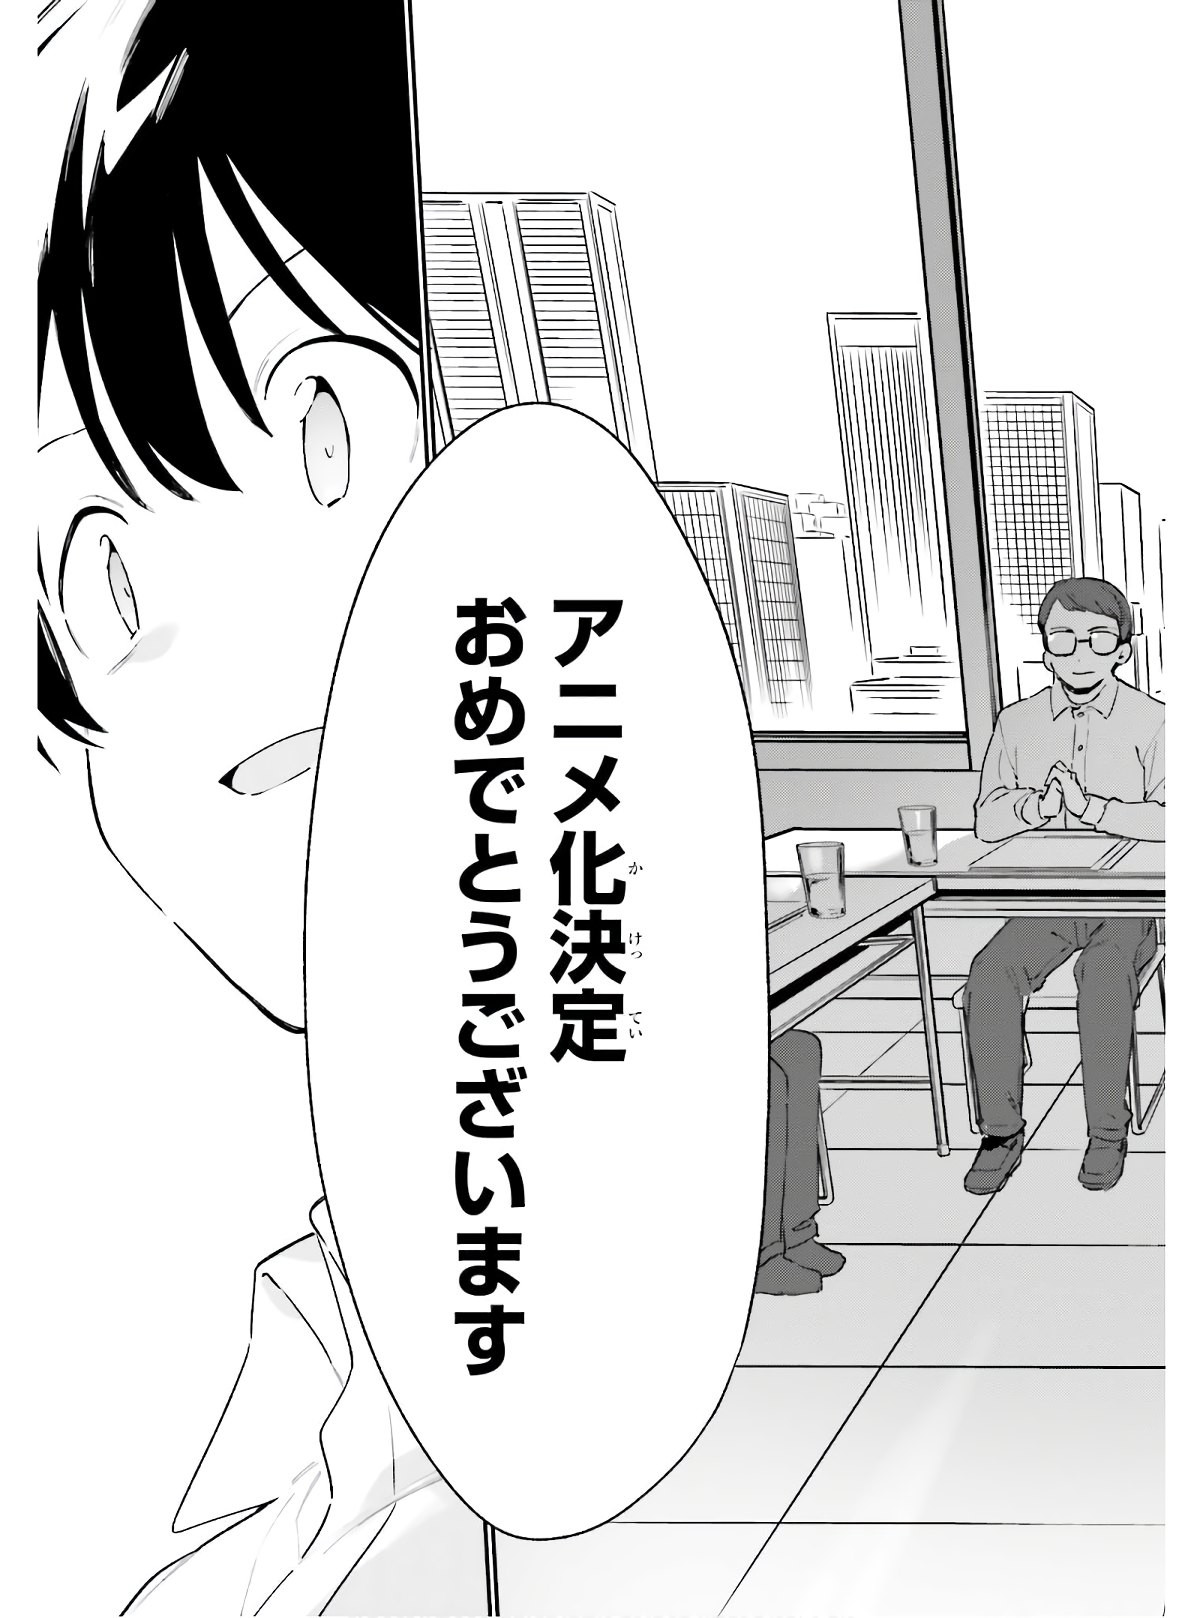 Ero Manga Sensei - Chapter 73 - Page 5